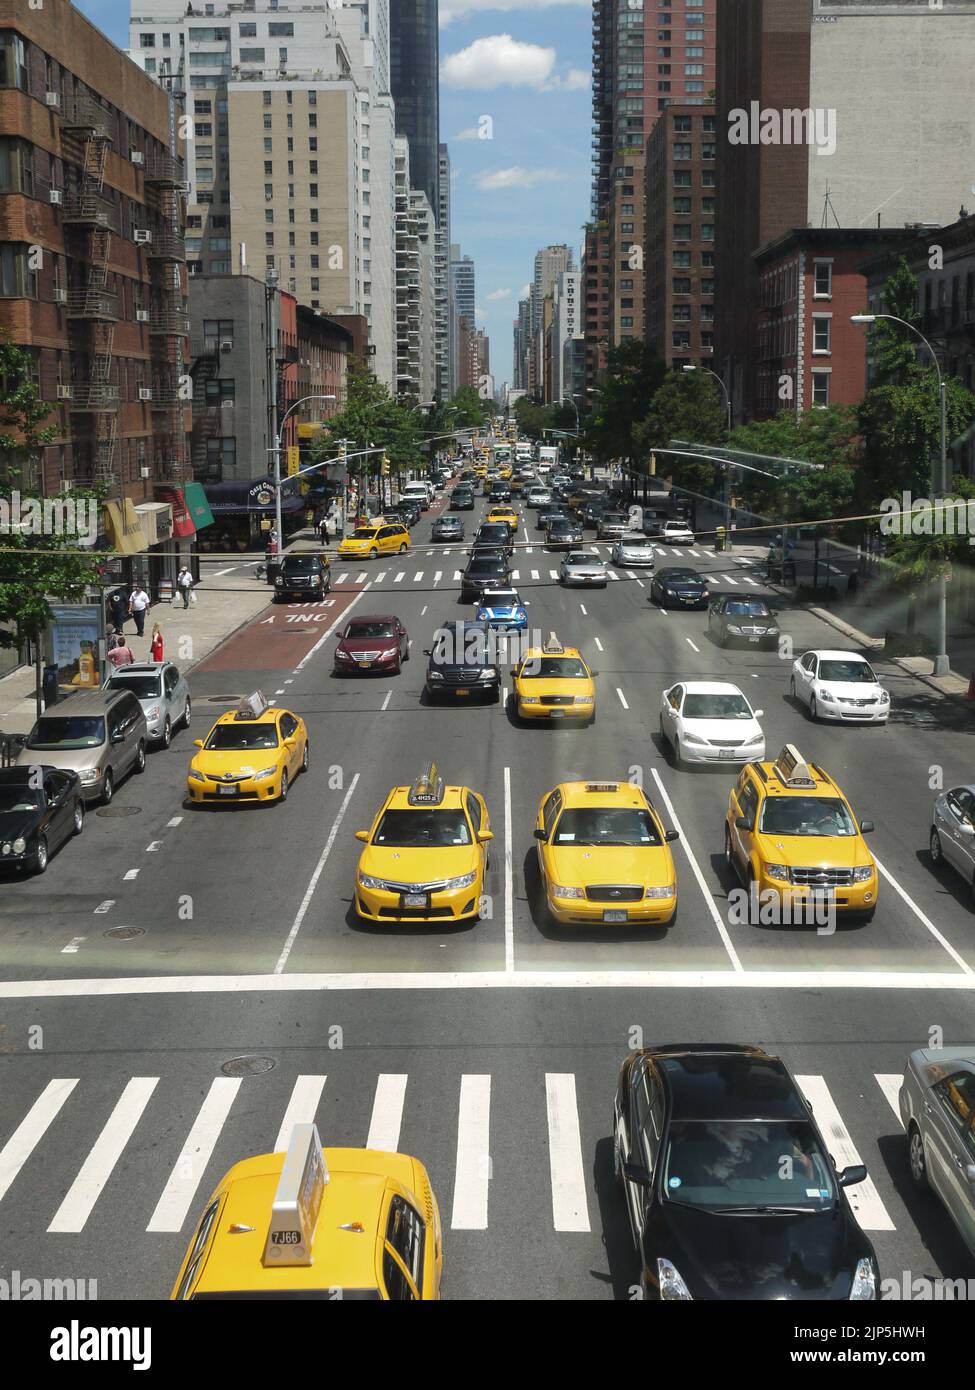 Vue d'Ariel de la deuxième Avenue avec le taxis jaune de New York, Upper East Side, pris du tramway d'Ariel de Roosevelt Island Banque D'Images